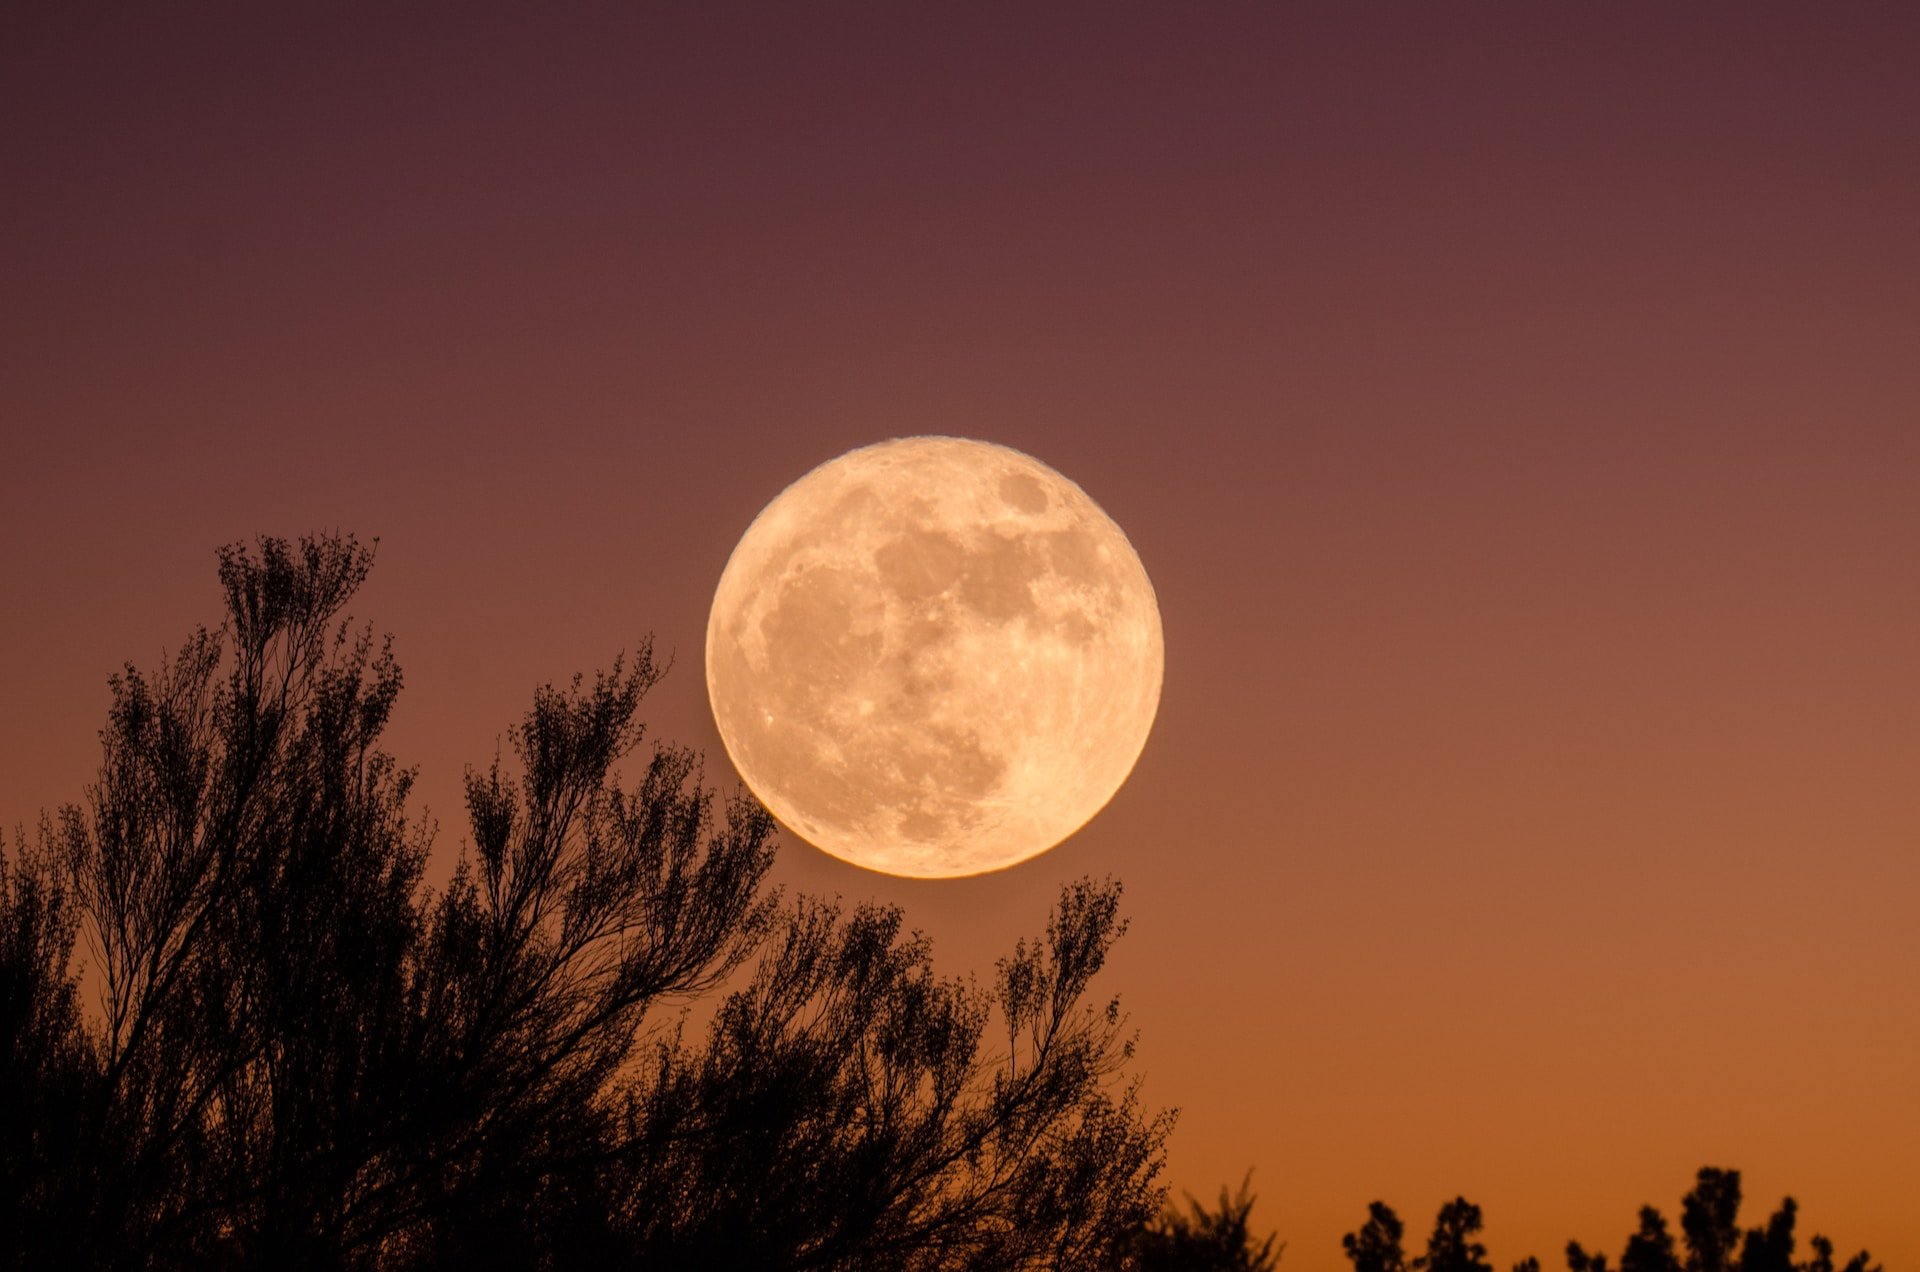 És cert que influeix la lluna en el nostre estat d'ànim?